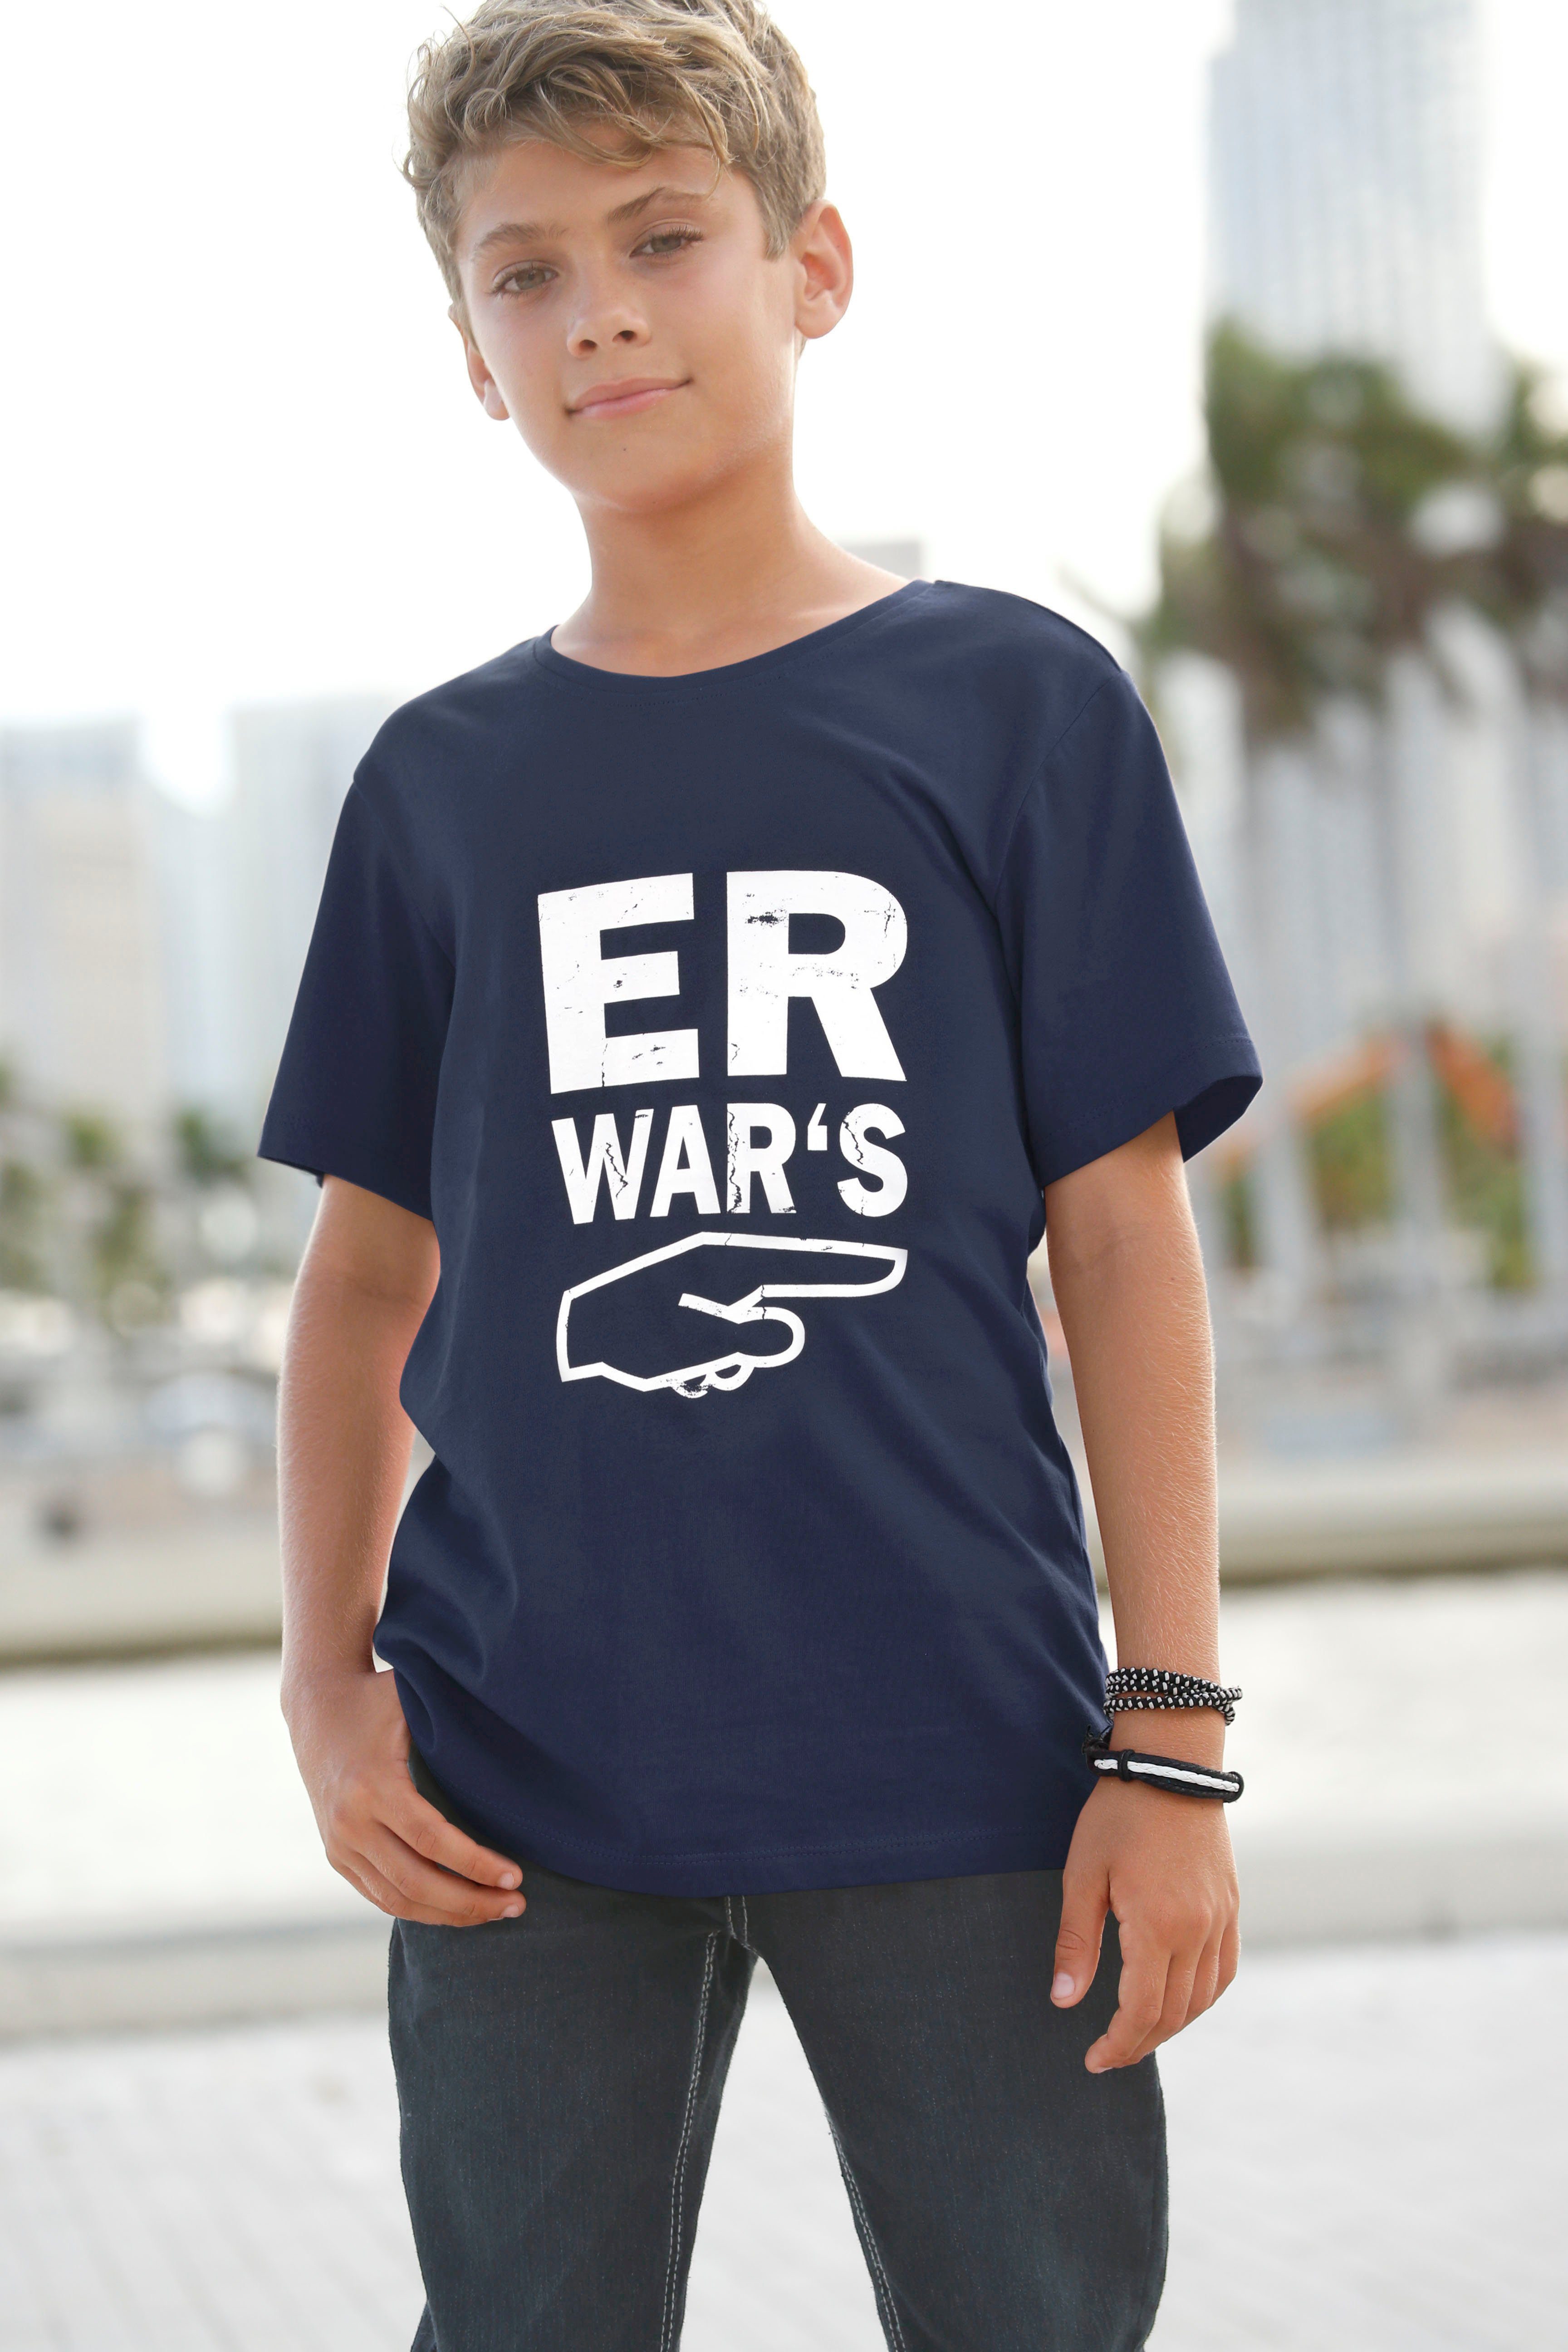 KIDSWORLD T-Shirt ER WAR`S, Spruch, T-Shirt von Arizona für Jungen